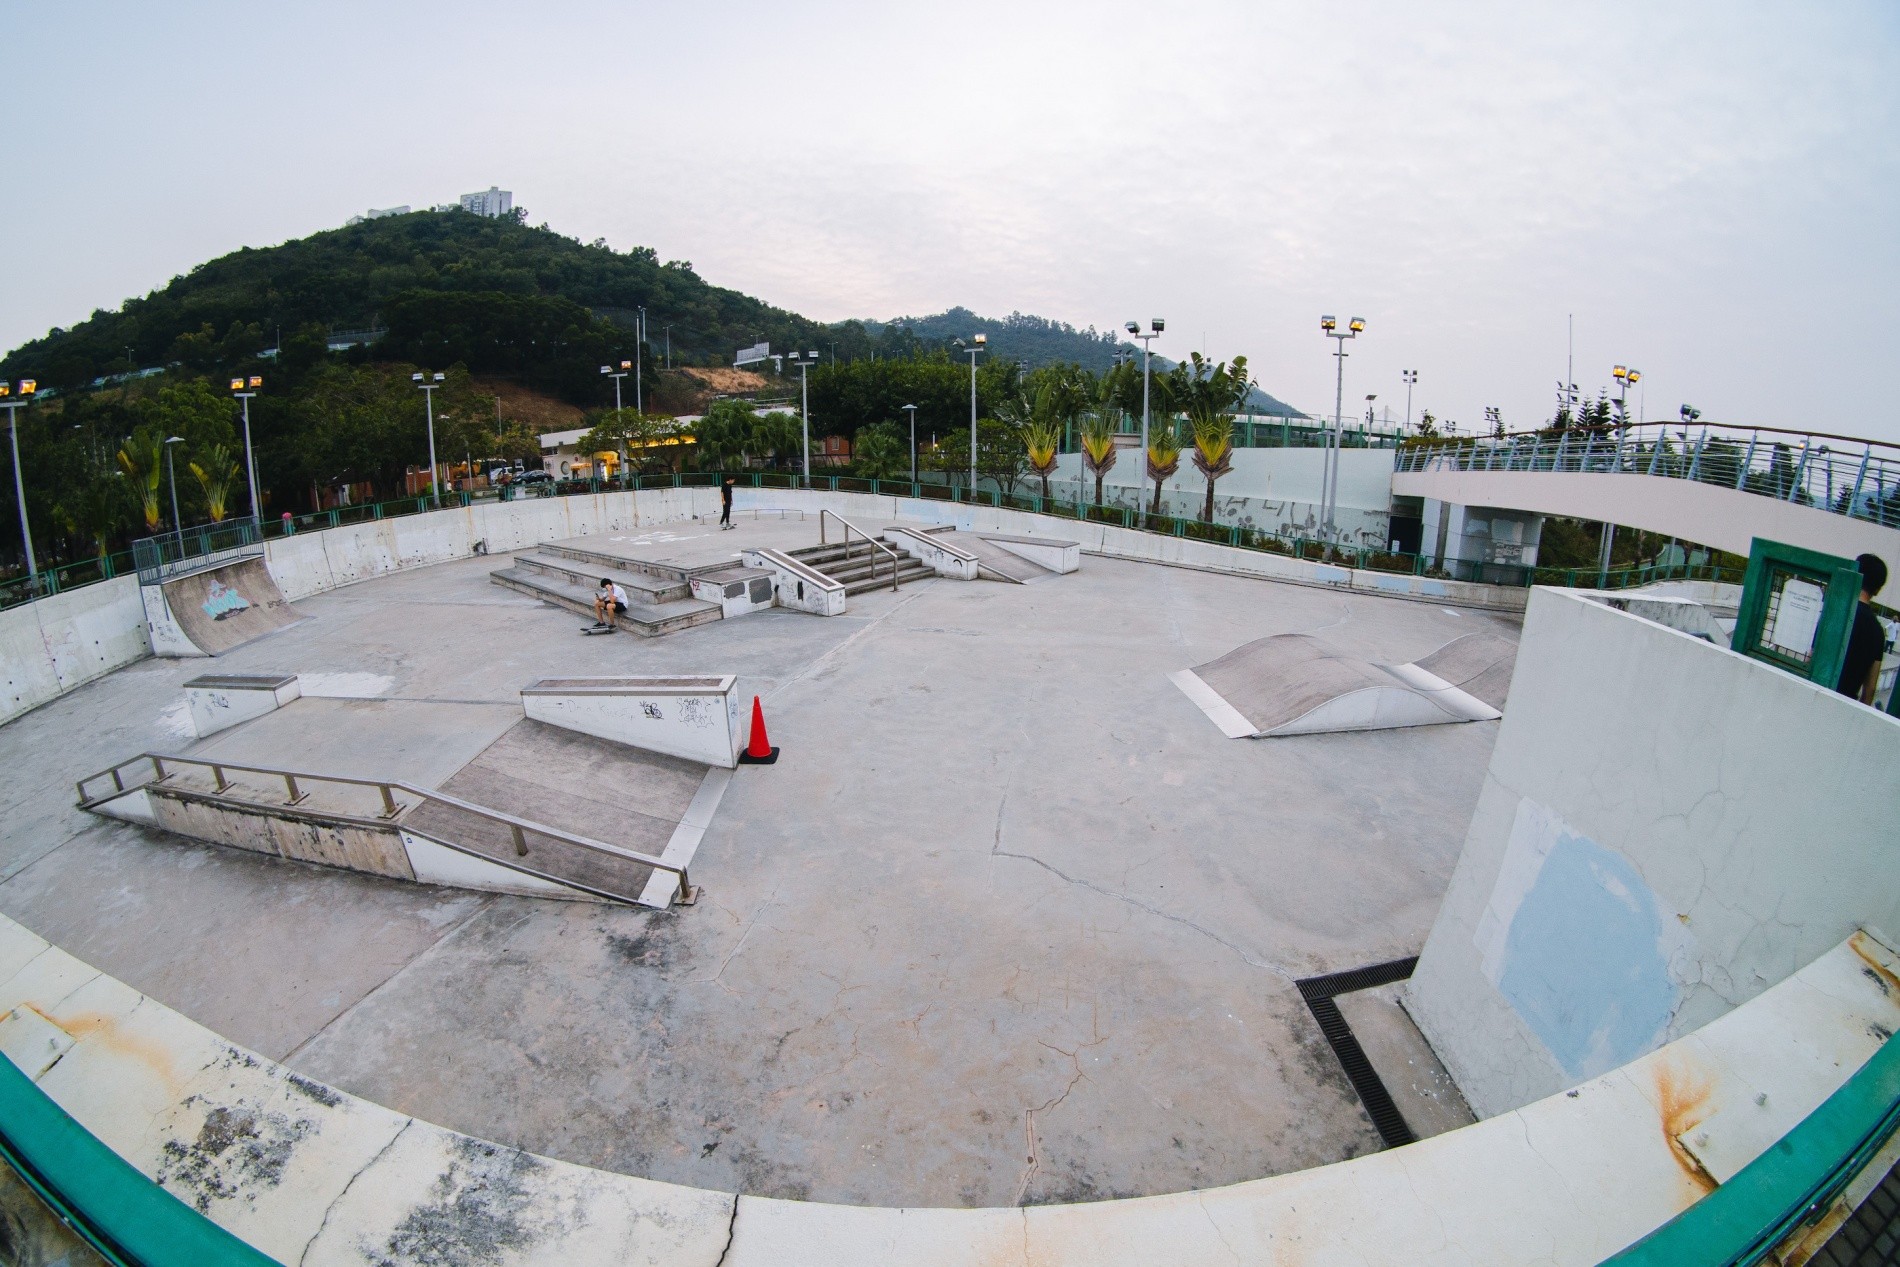 Tsing Yi skatepark